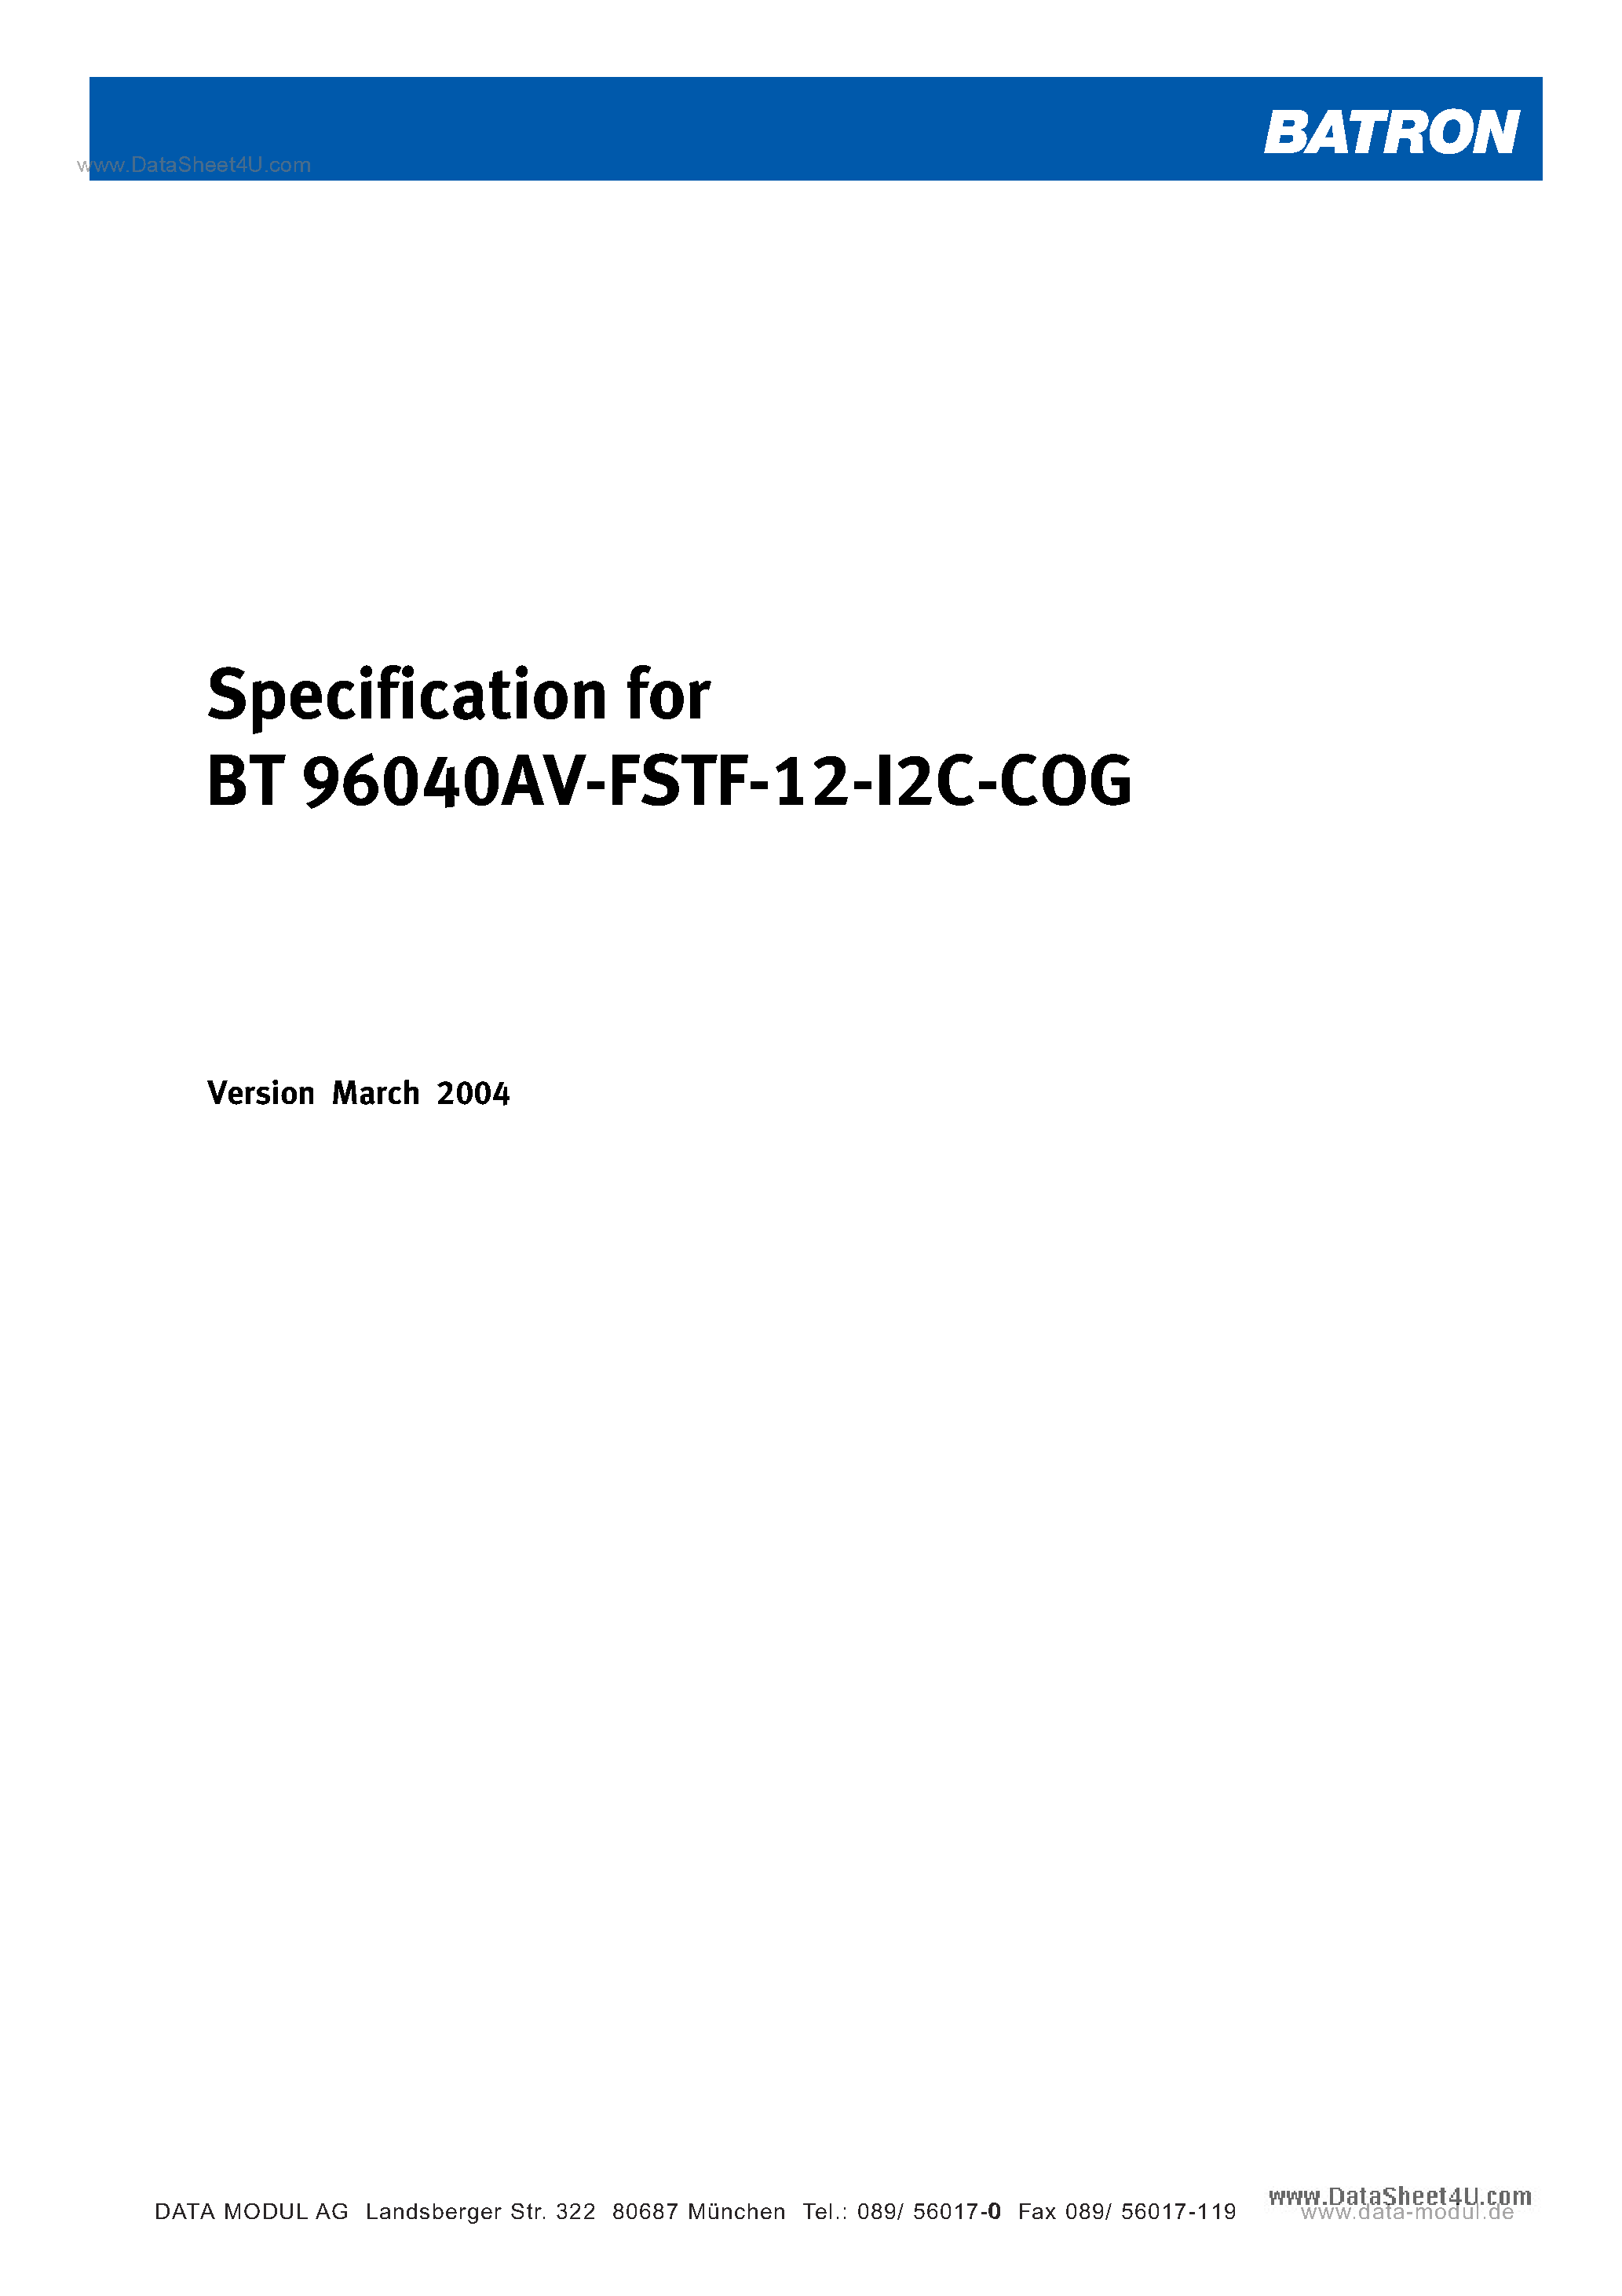 Даташит BT96040AV-FSTF-12-12C-COG - Specification of LCD Module Type страница 1